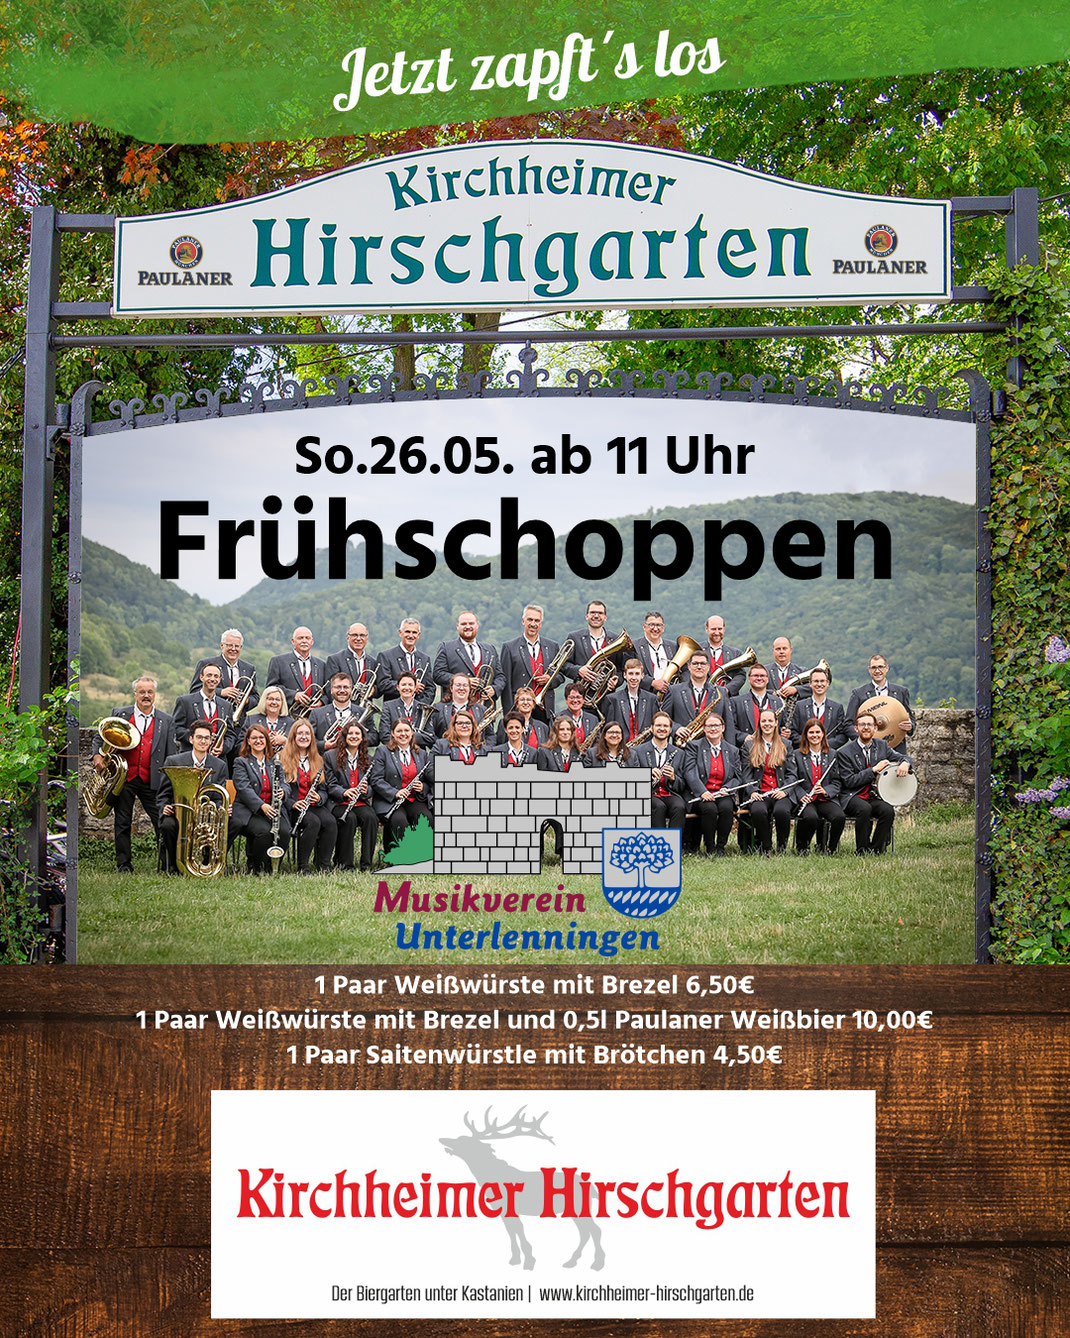 Frühschoppen im Kirchheimer Hirschgarten mit dem MV Unterlenningen